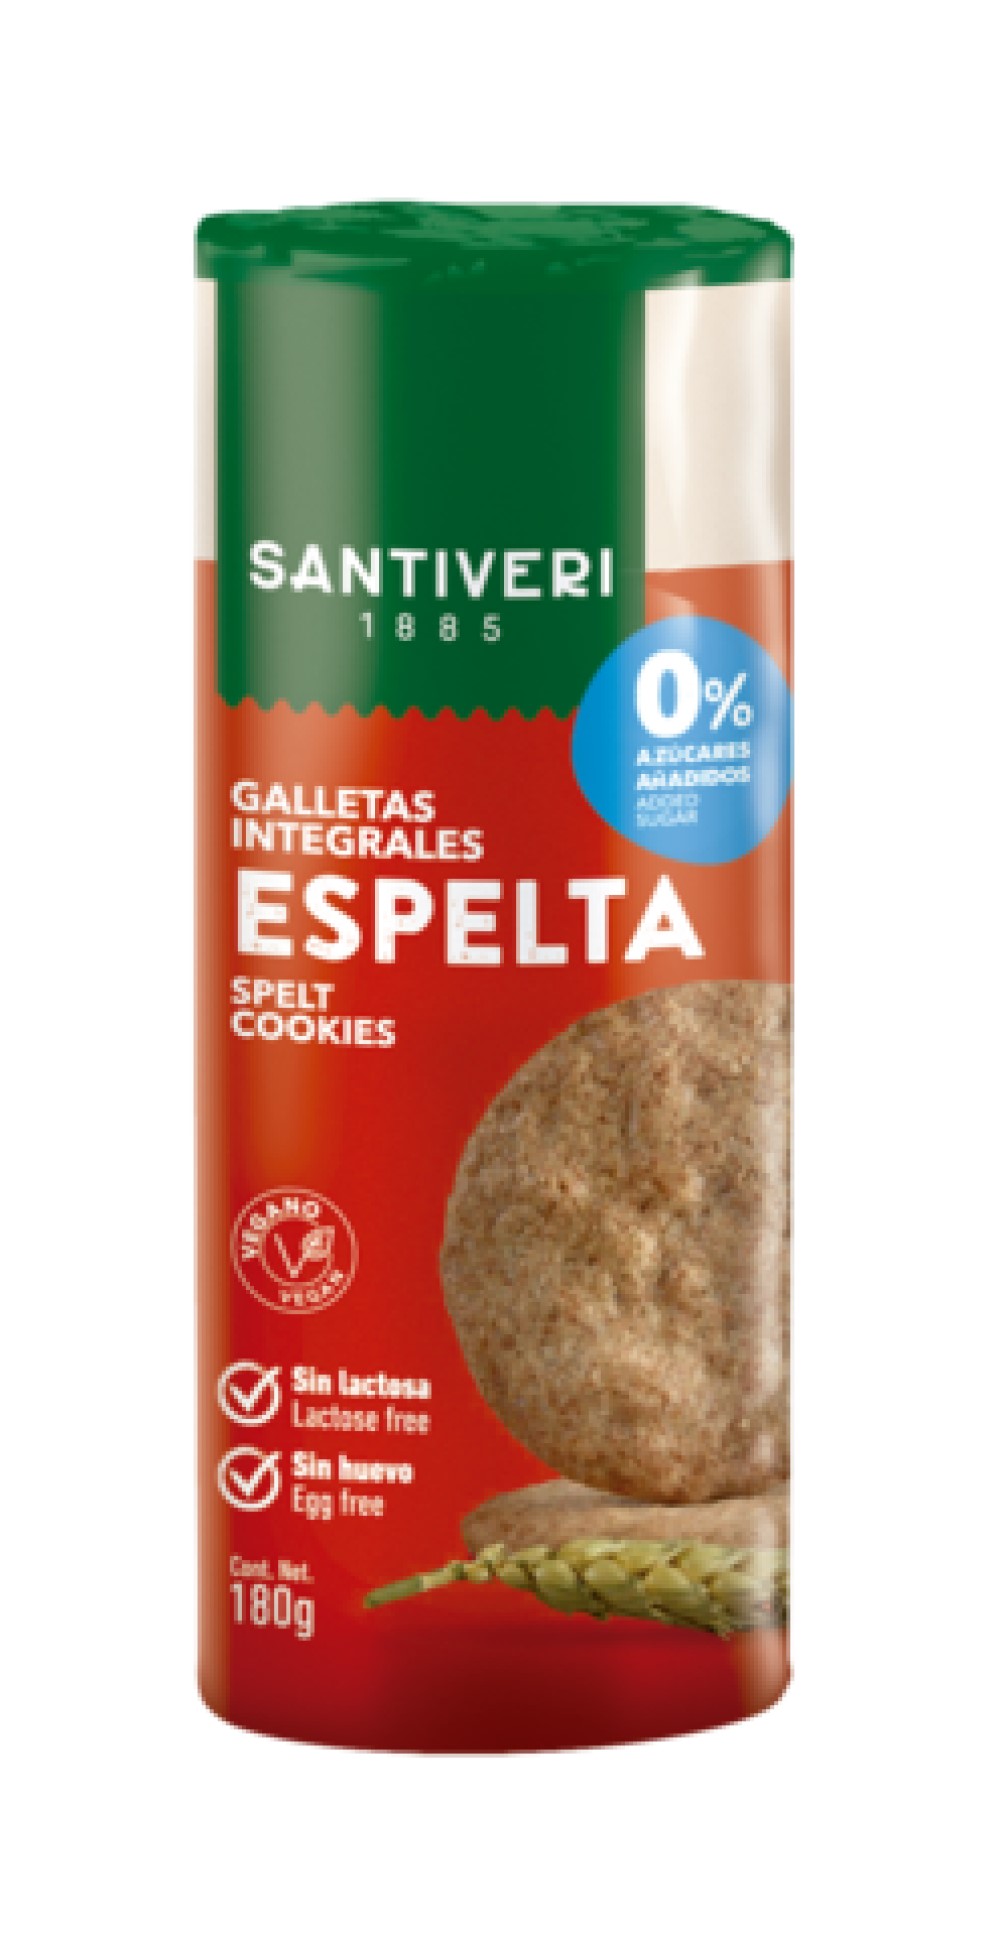 Galletas digestive 0% azúcares original 190g Santiveri [8412170021648]